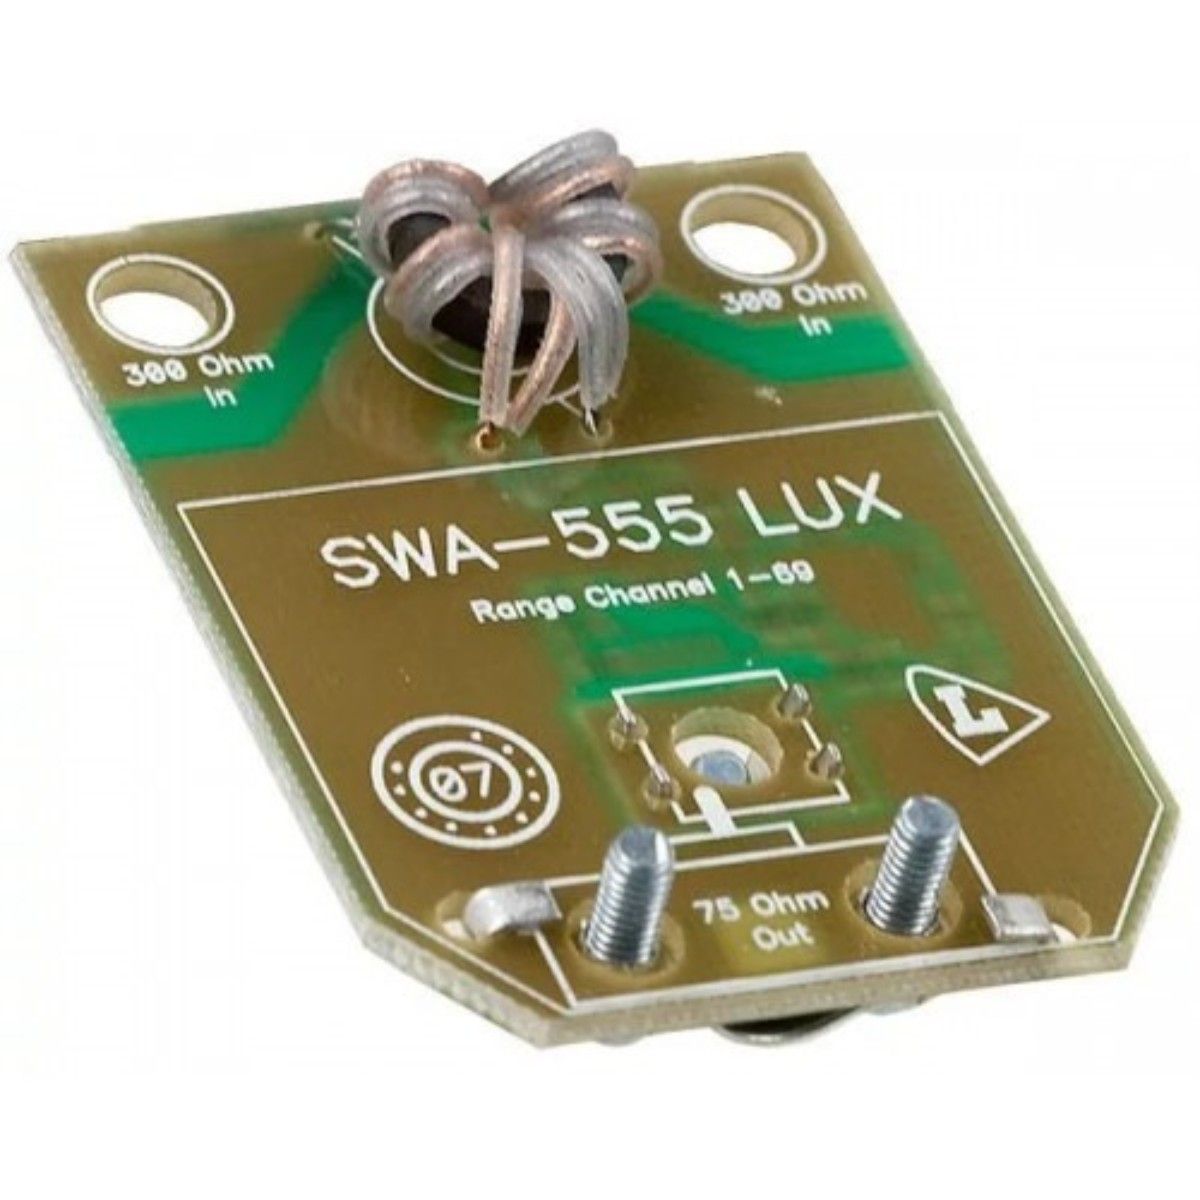 Усилитель антенный SWA-555. Усилитель SWA-777 Lux. Усилитель антенный SWA-555 Lux. Усилитель для цифрового антенна SWA 555 Lux.